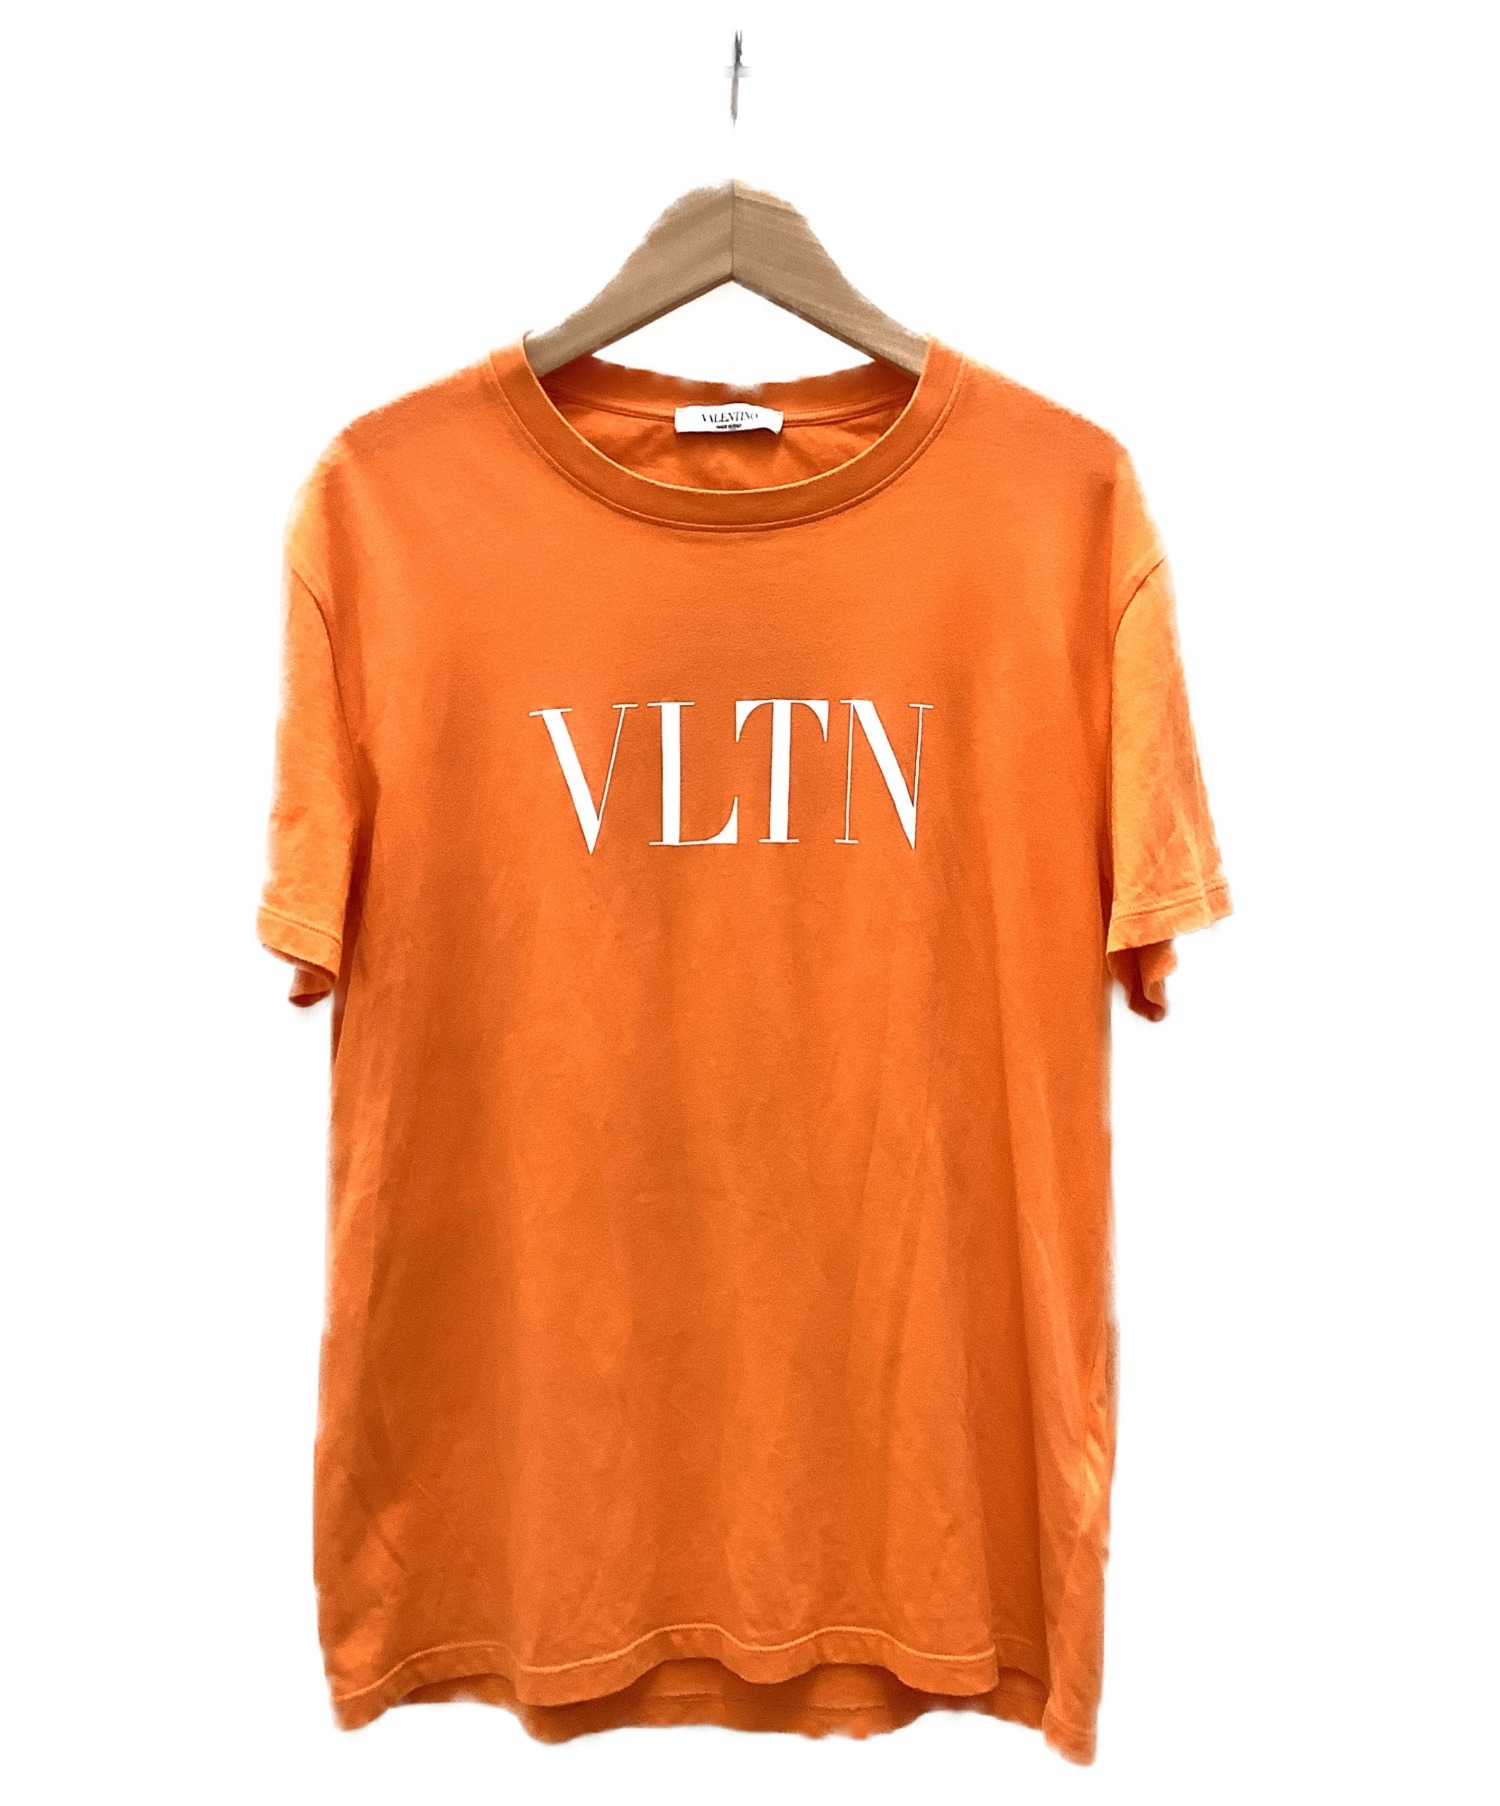 VALENTINO (ヴァレンティノ) Tシャツ オレンジ サイズ:S